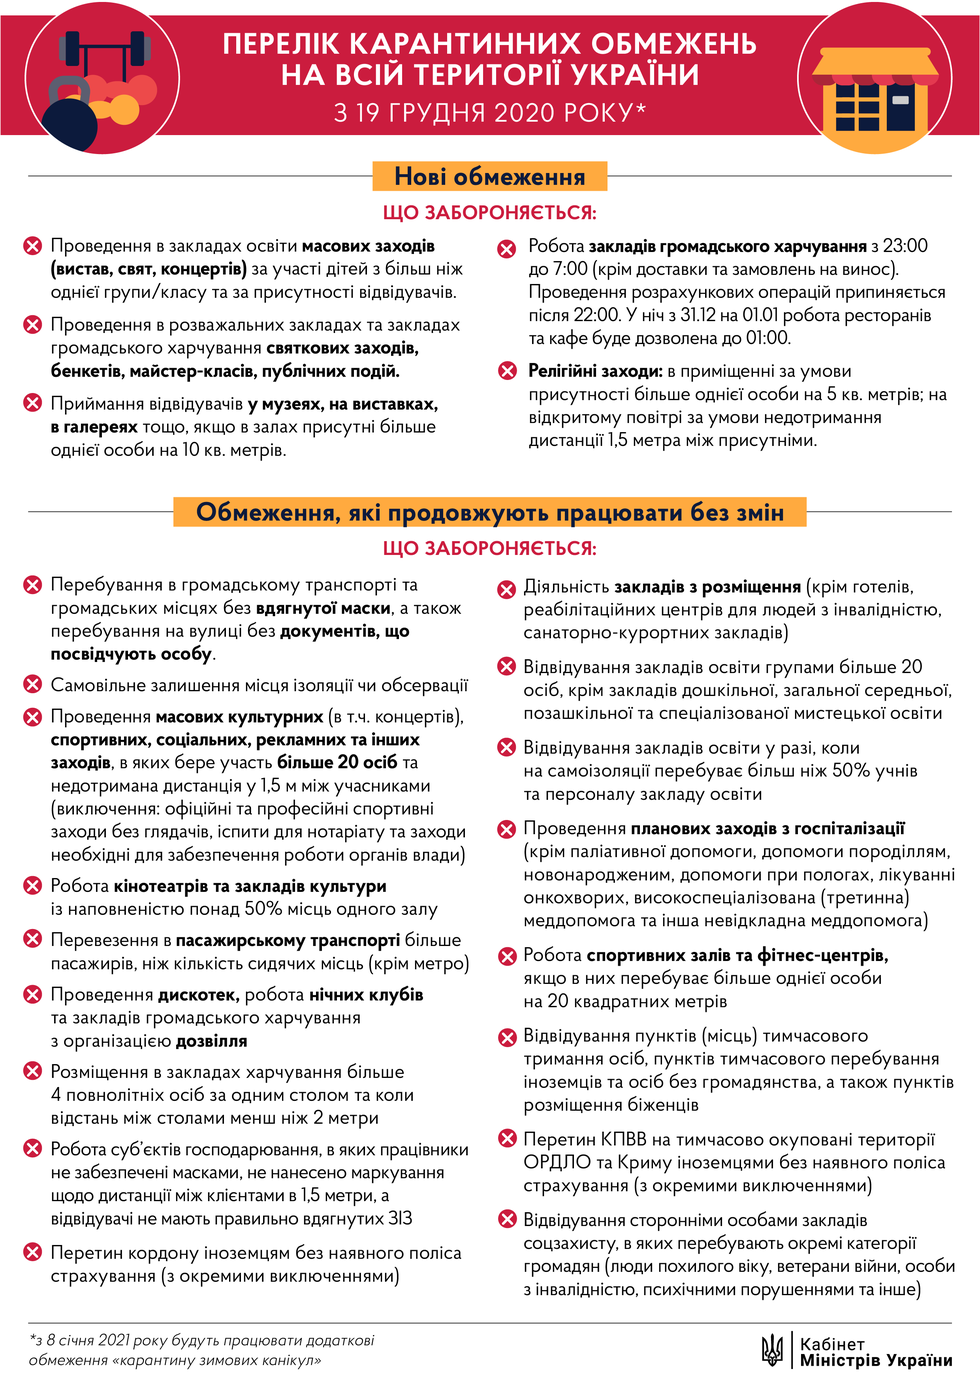 Правила карантину в Україні з 19 грудня. Інфографіка 1